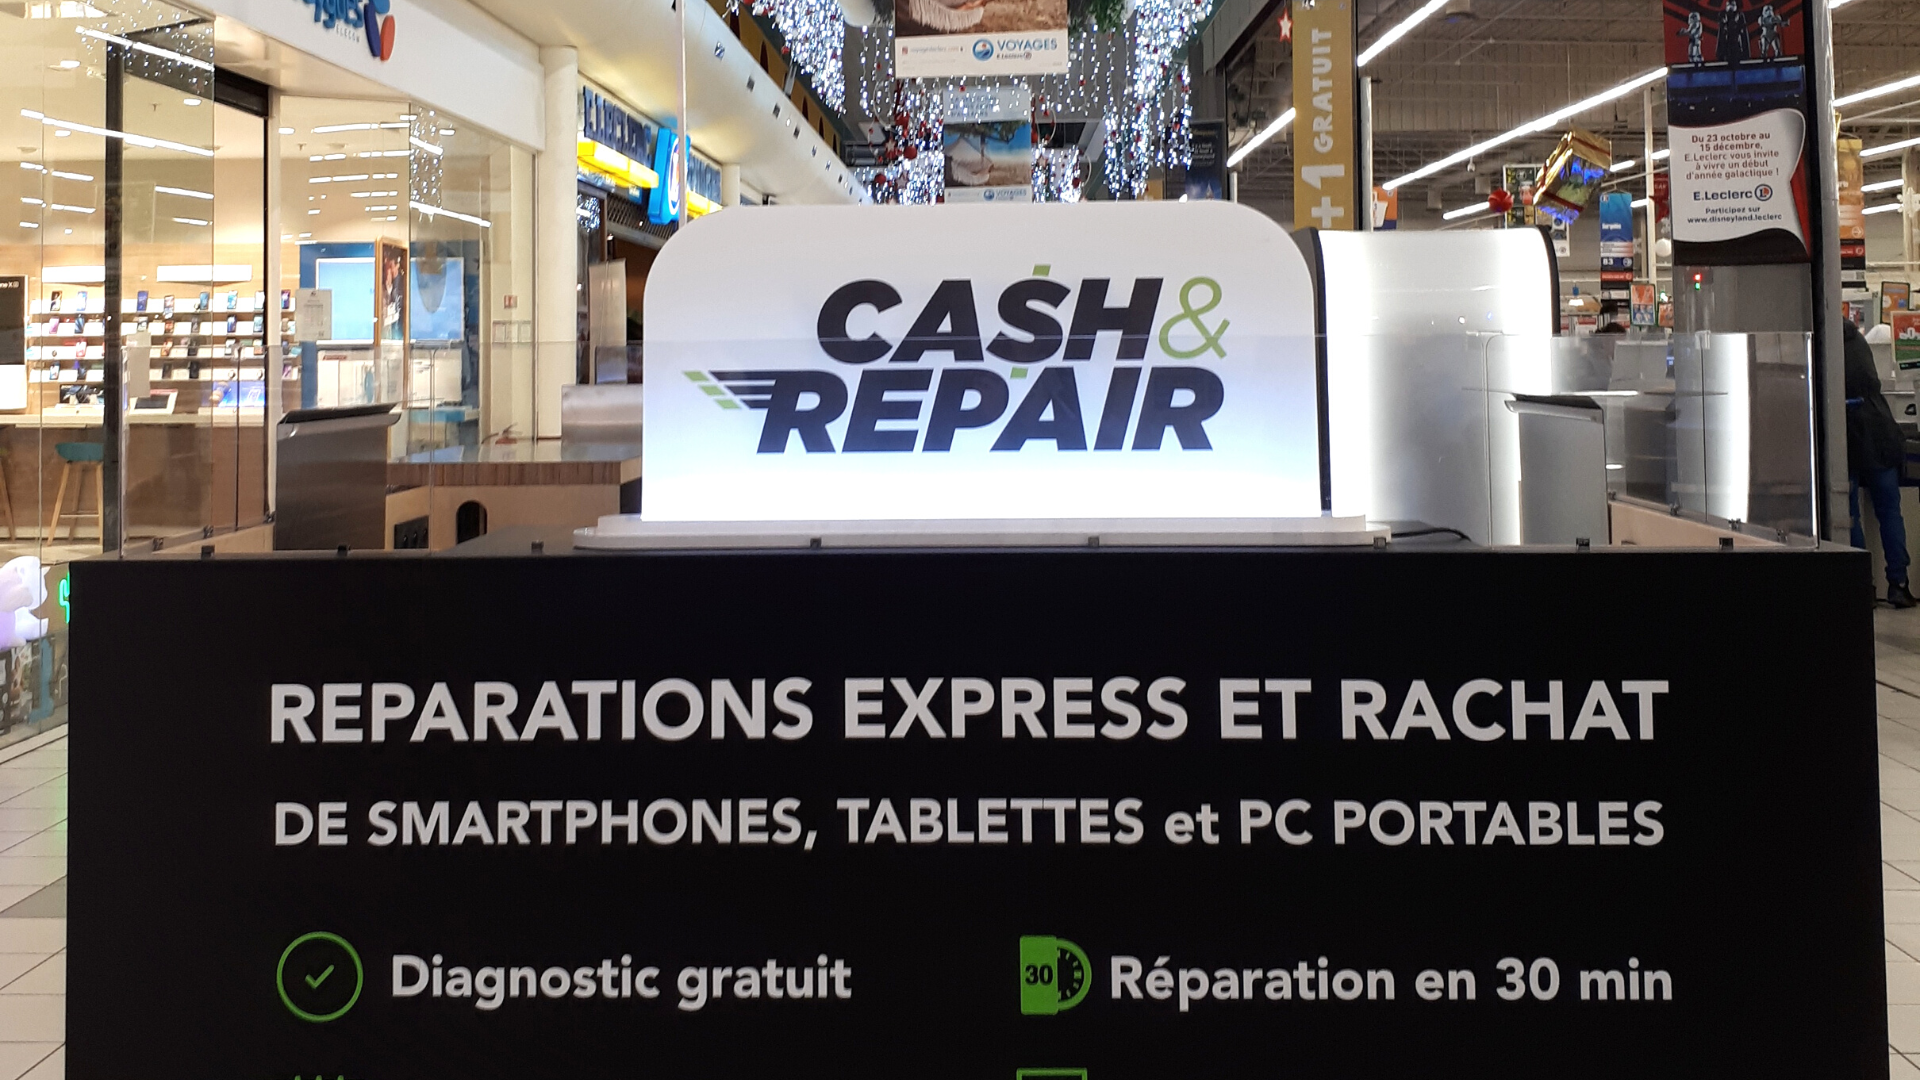 Atelier de réparation Cash and Repair Clichy-sous-Bois